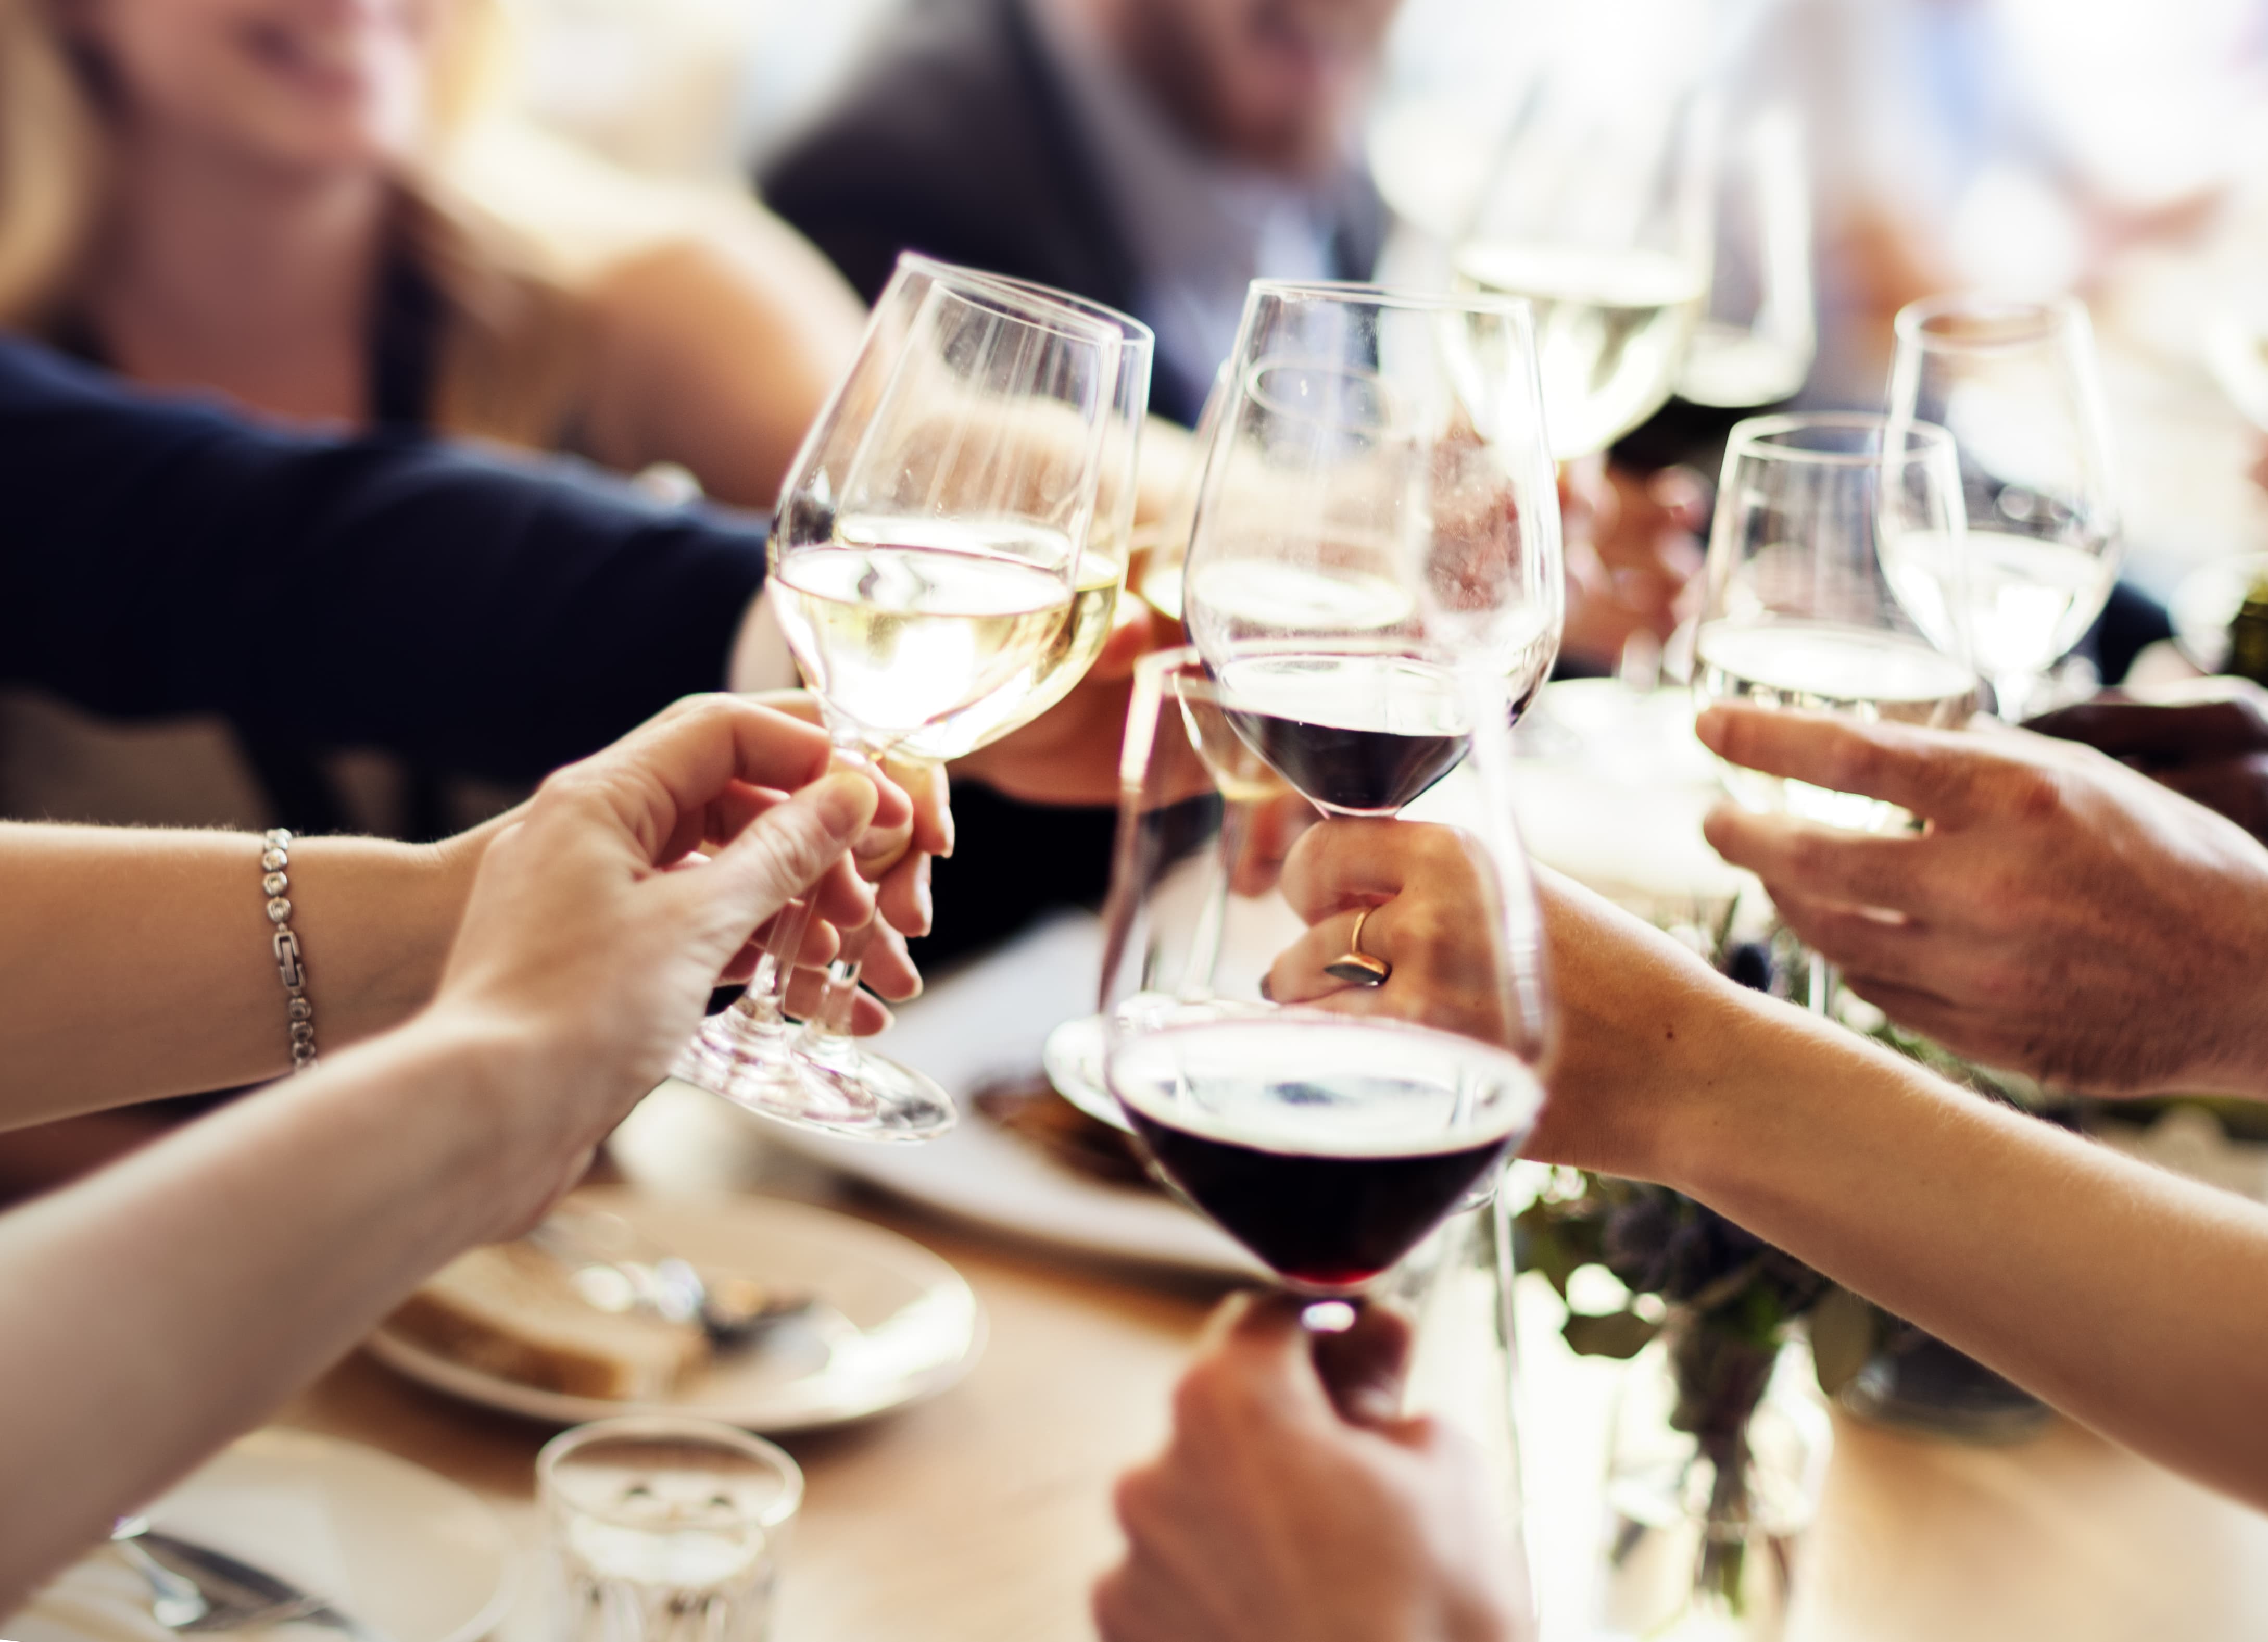 Bom de copo: O consumo inteligente do vinho tem grandes benefícios para saúde e longevidade